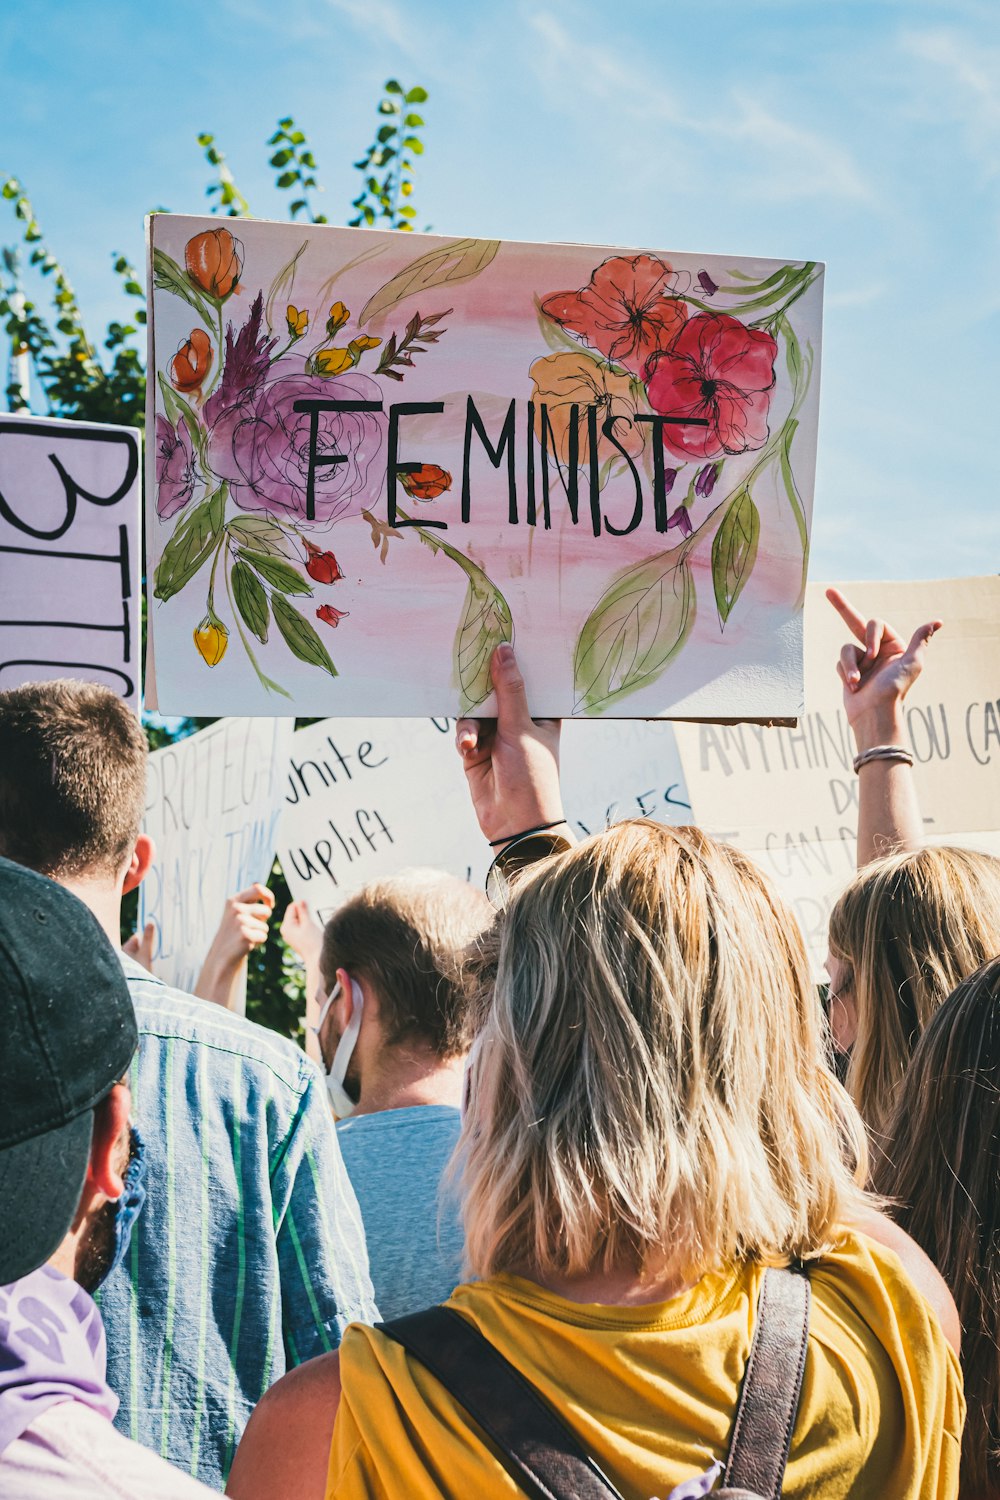 Eine Gruppe von Menschen hält ein Schild hoch, auf dem feministisch steht